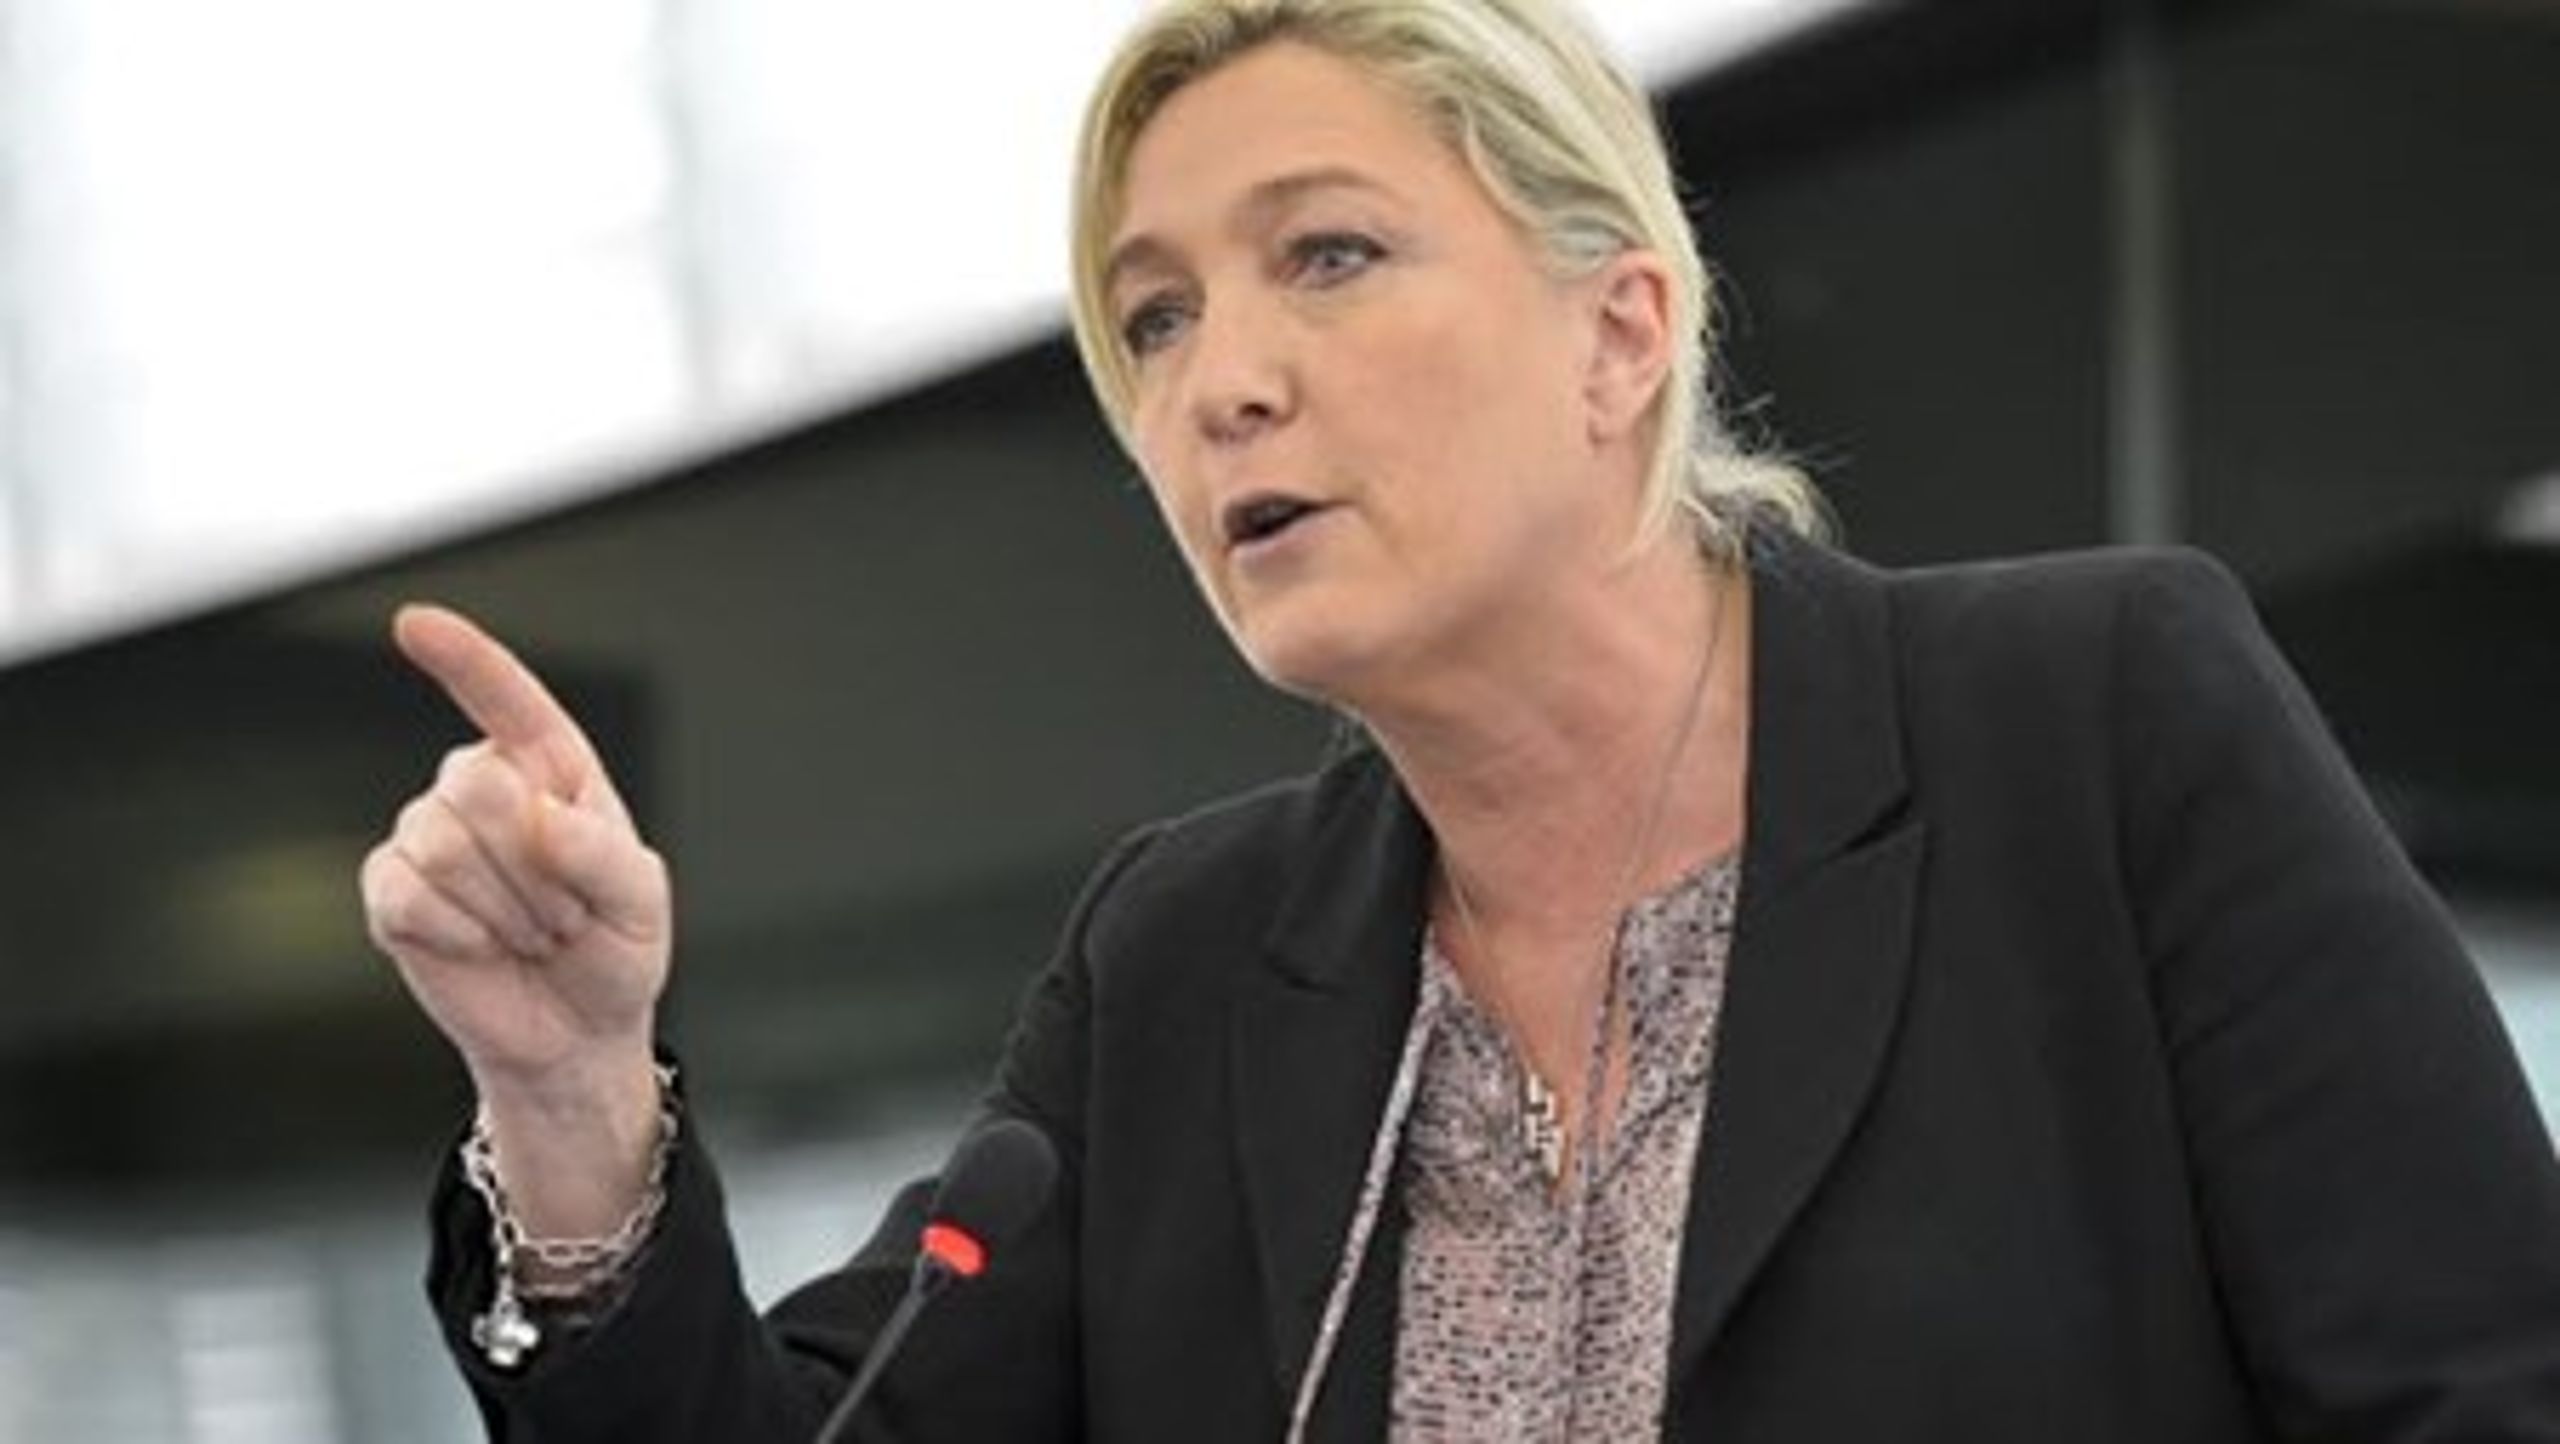 Formand for franske Front National, Marine Le Pen